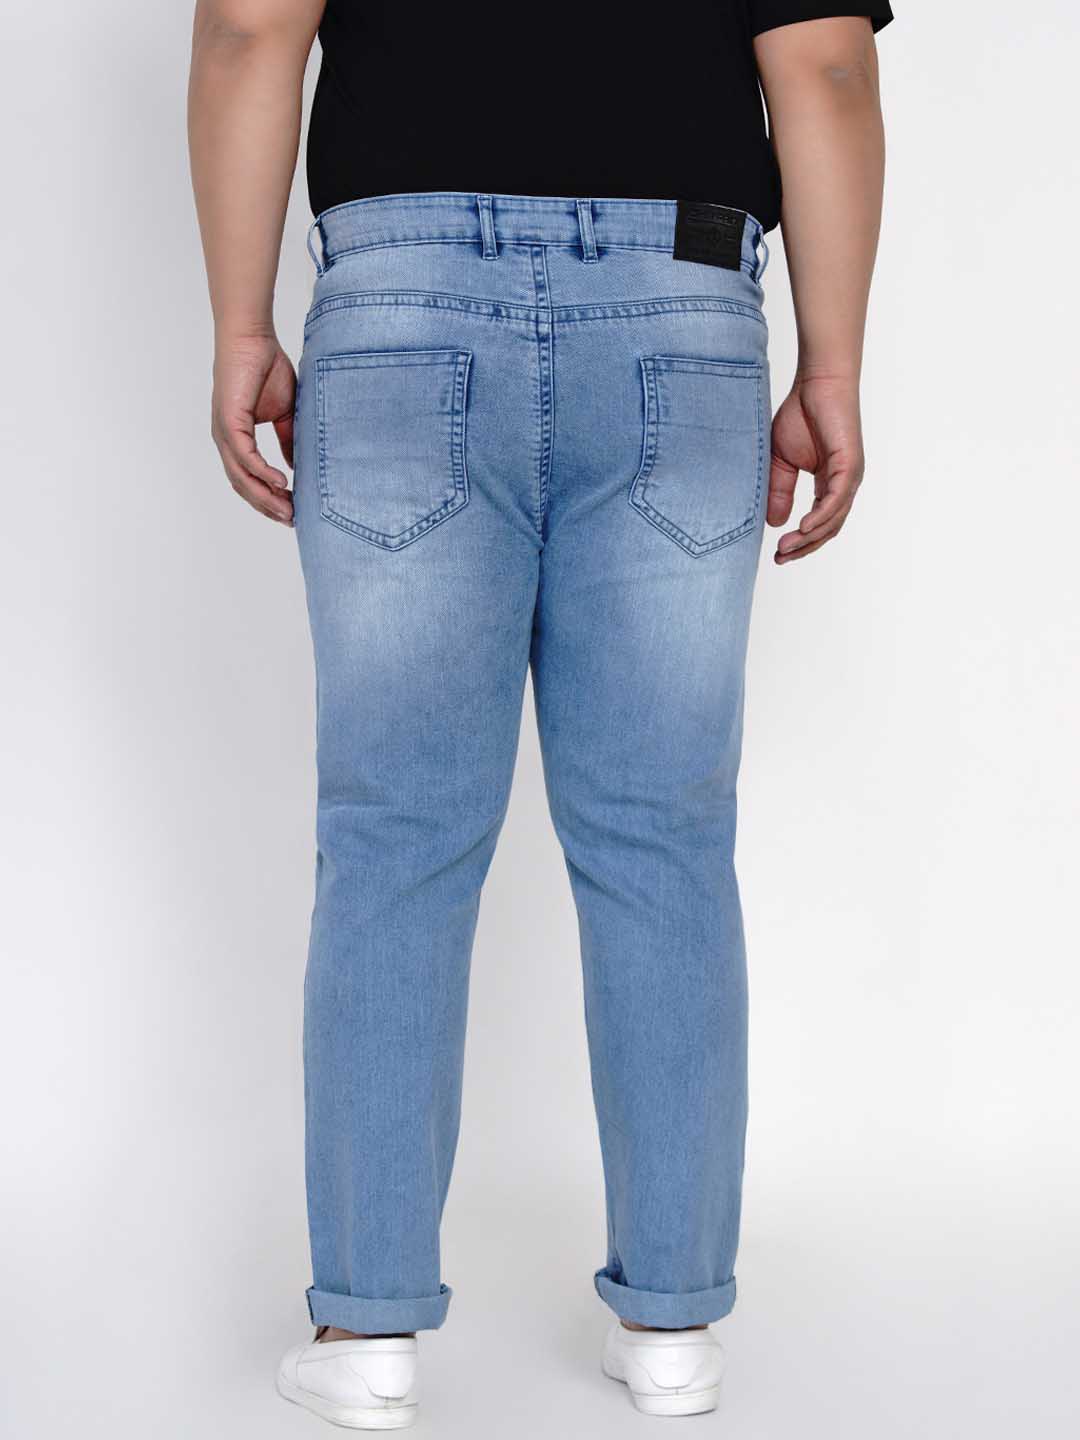 bottomwear/jeans/JPJ12114/jpj12114-4.jpg